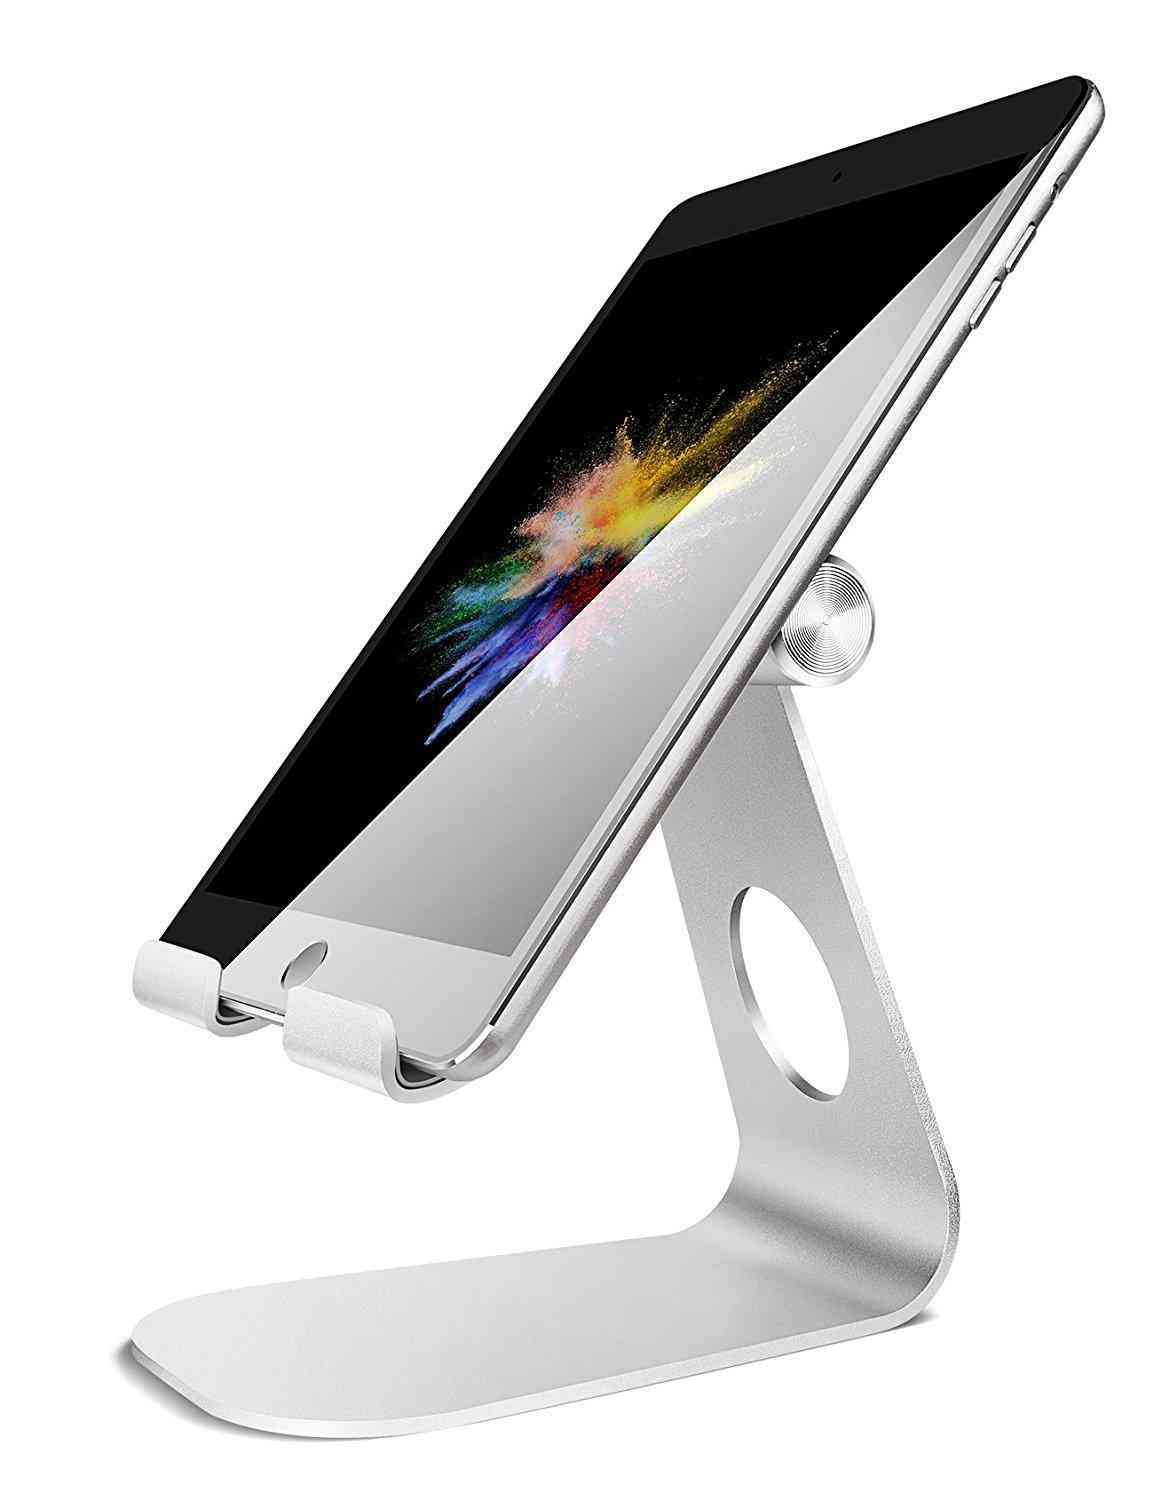 Tablet Stand Adjustable Aluminum Desktop Stands Holder